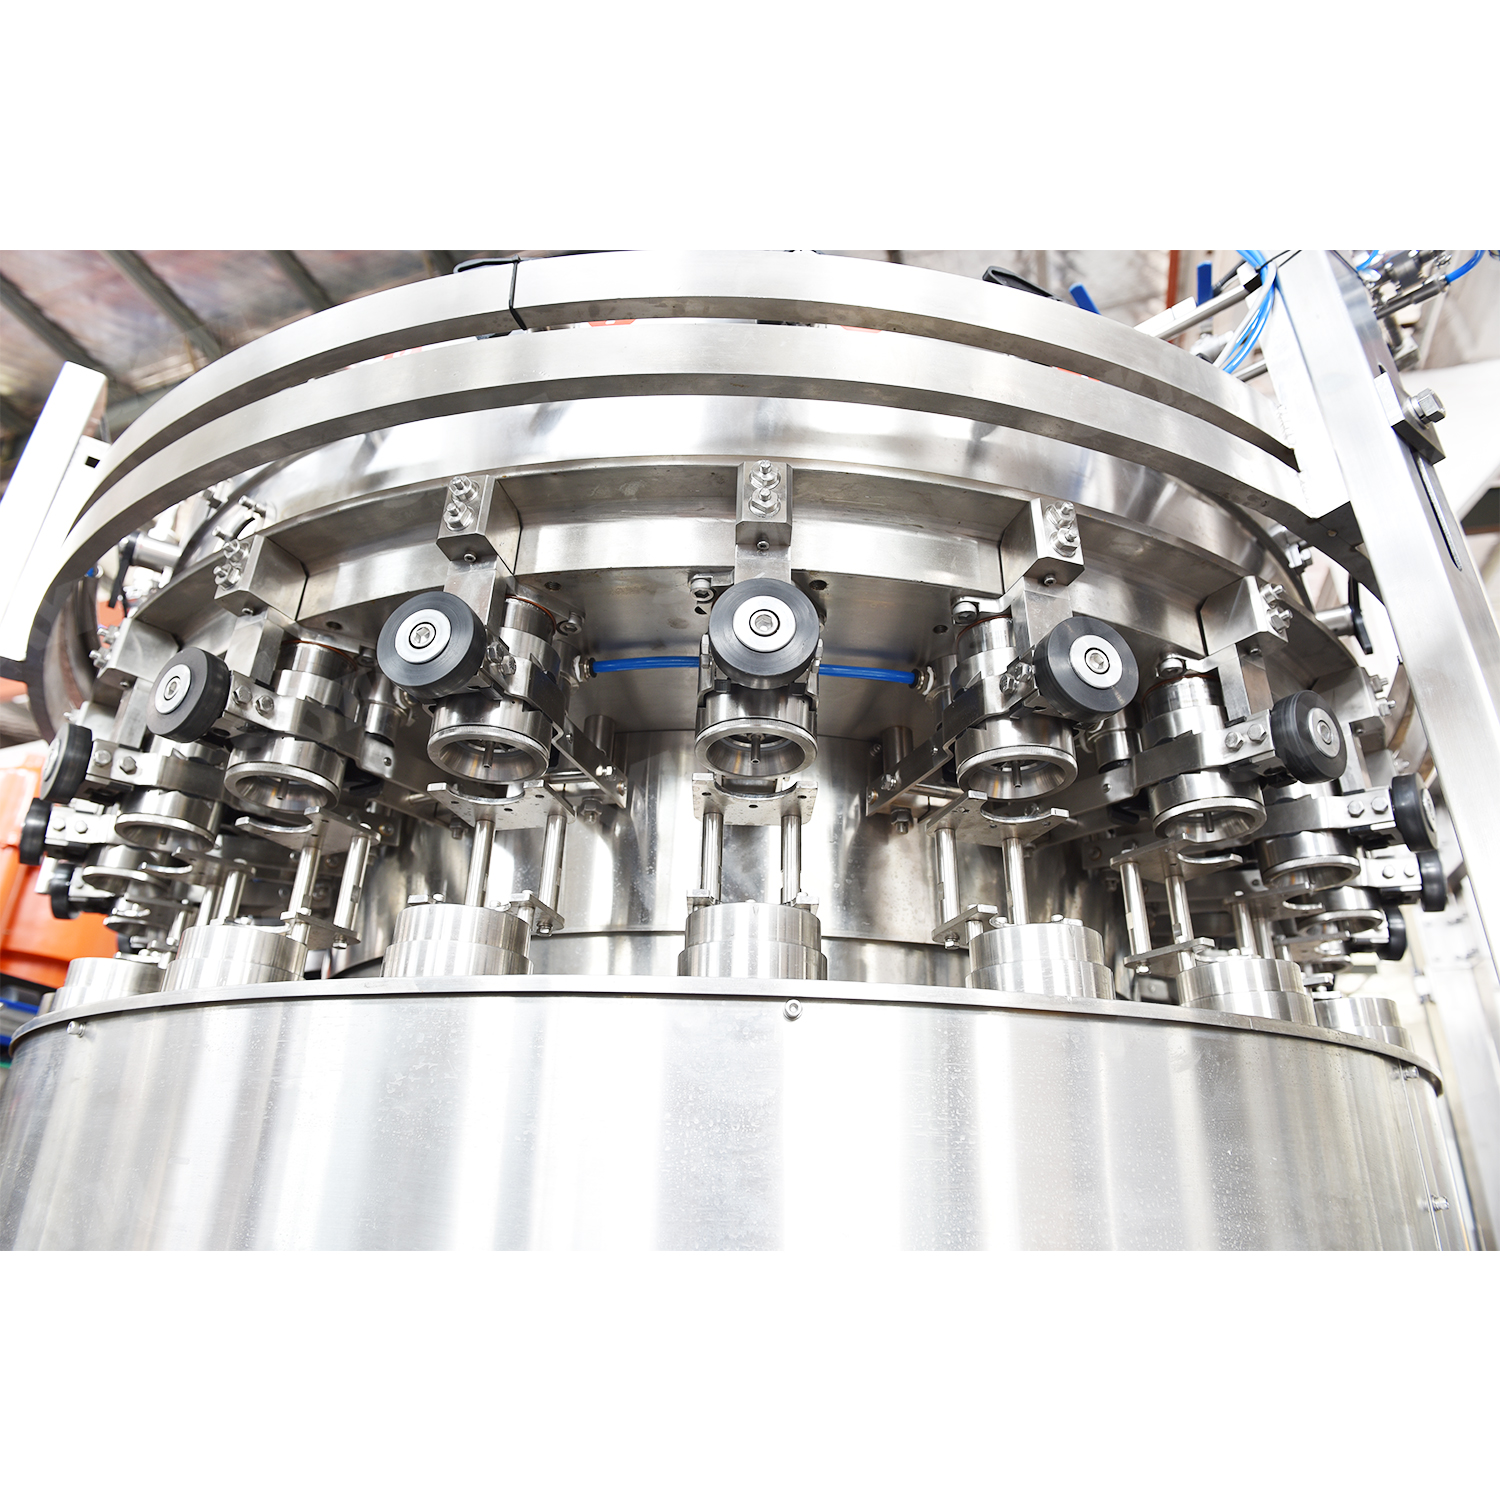 Machine de remplissage industrielle de canettes en aluminium de bière